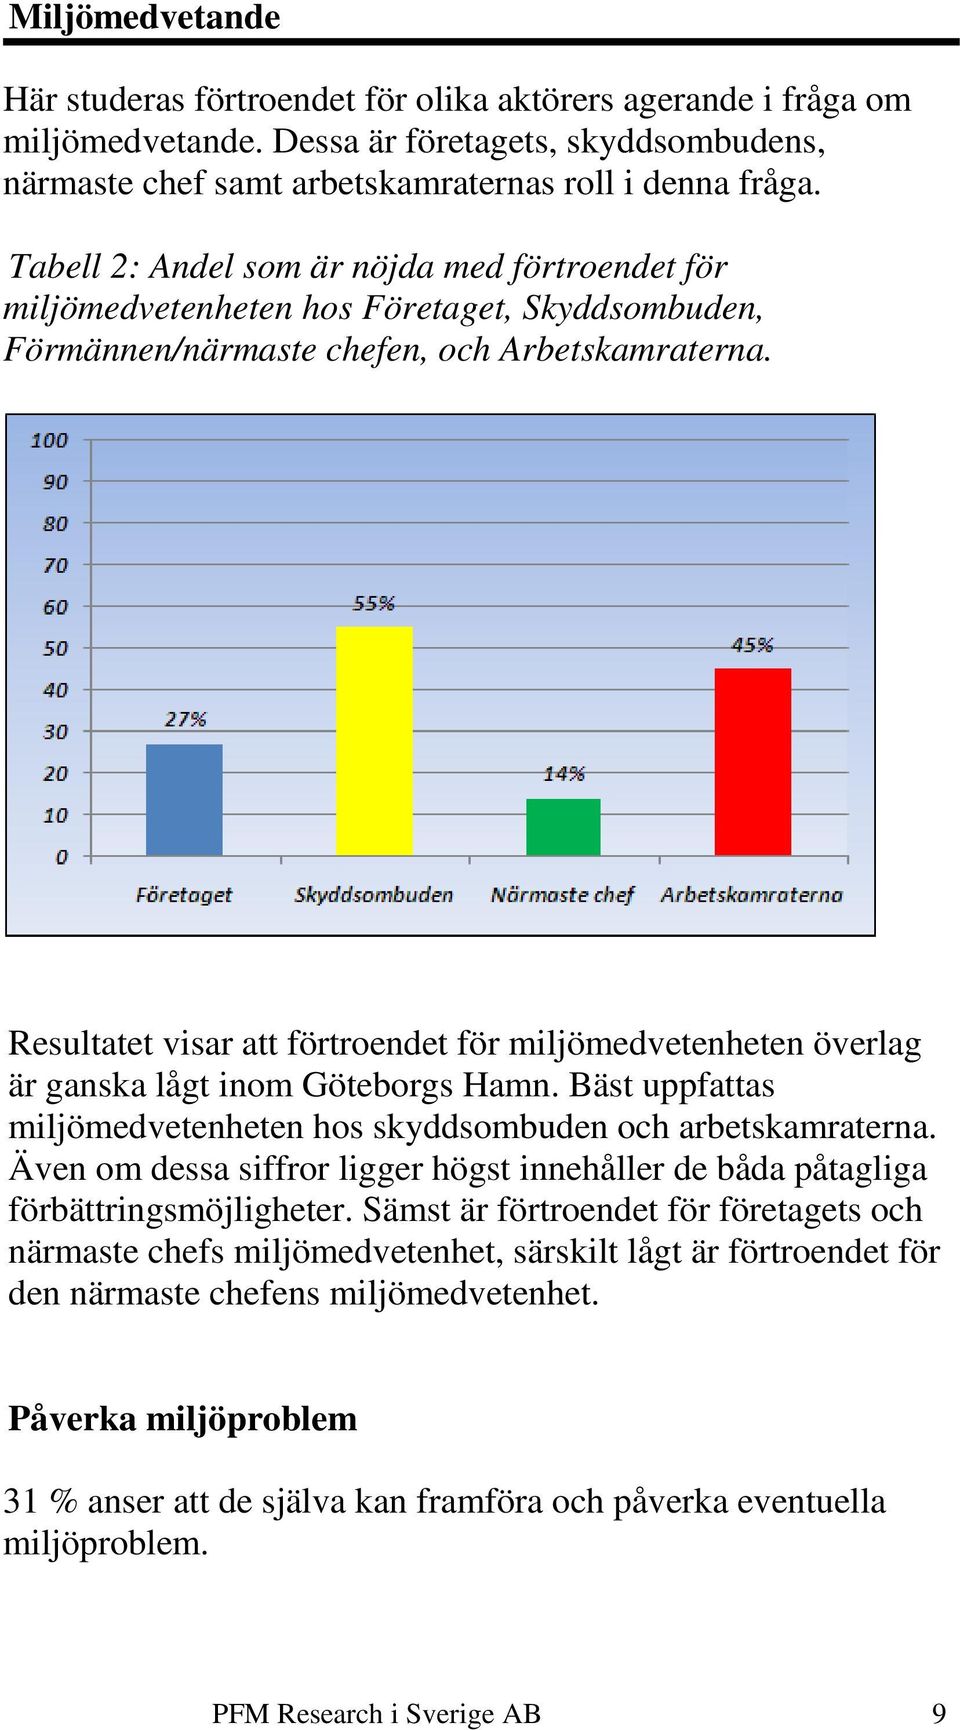 Resultatet visar att förtroendet för miljömedvetenheten överlag är ganska lågt inom Göteborgs Hamn. Bäst uppfattas miljömedvetenheten hos skyddsombuden och arbetskamraterna.